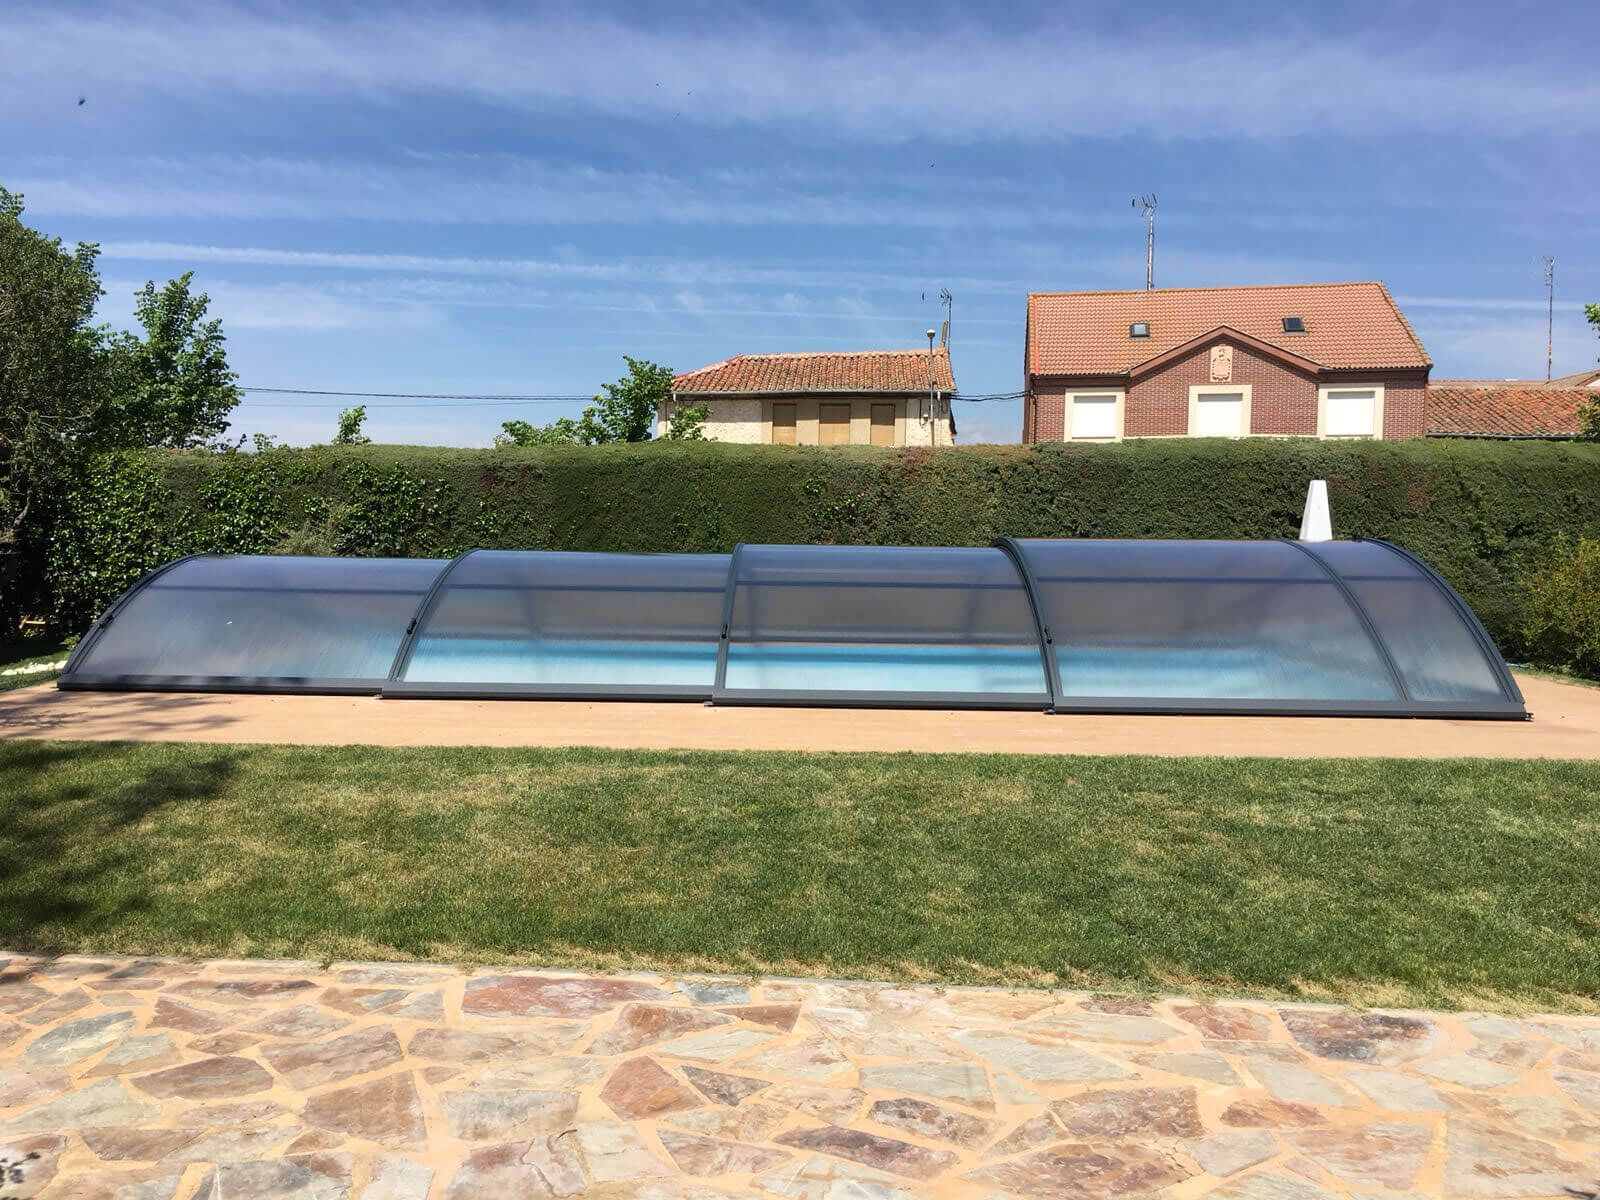 Cubierta Teide: Cerramiento telescópico y bajo para piscina en Logroño exterior lateral